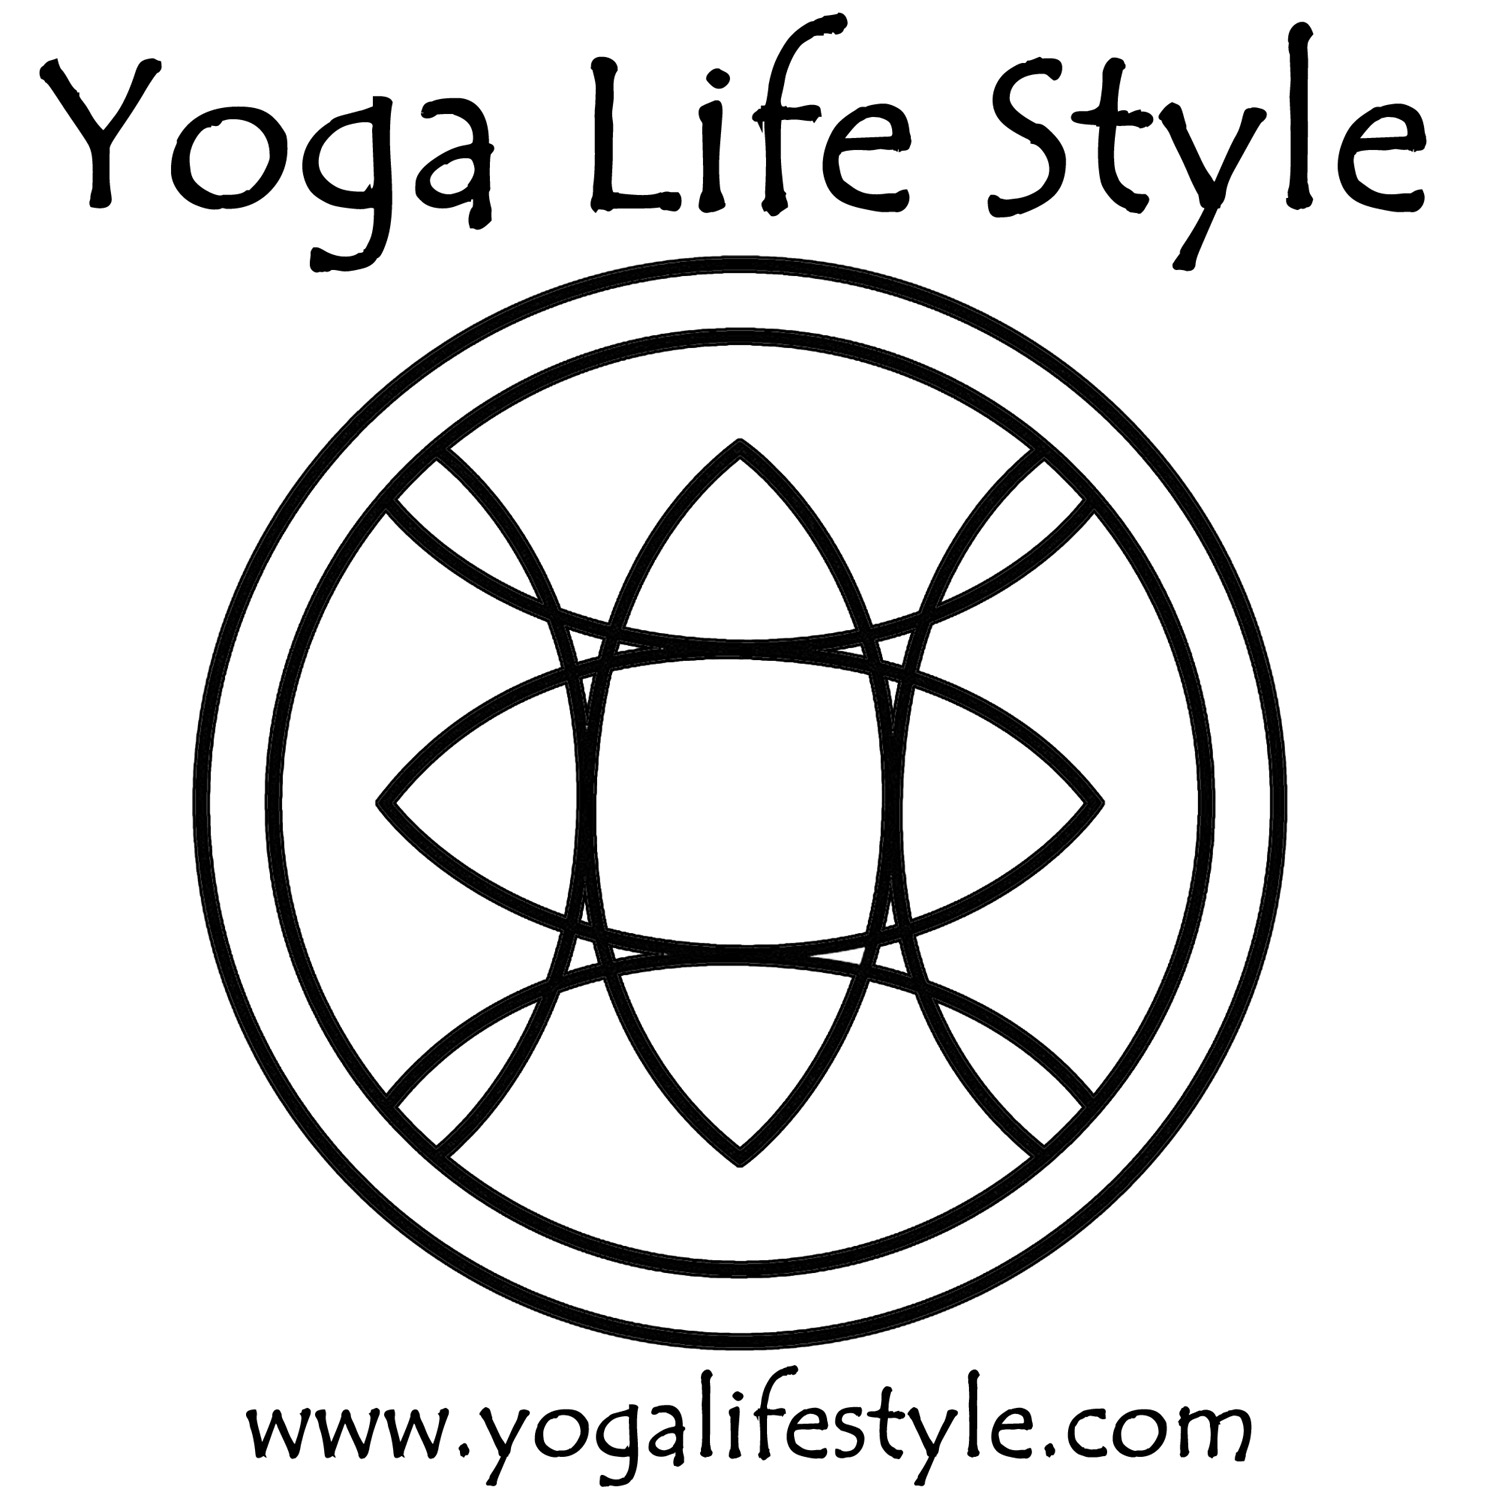 Yoga Life Style and Bheka Yoga Supply